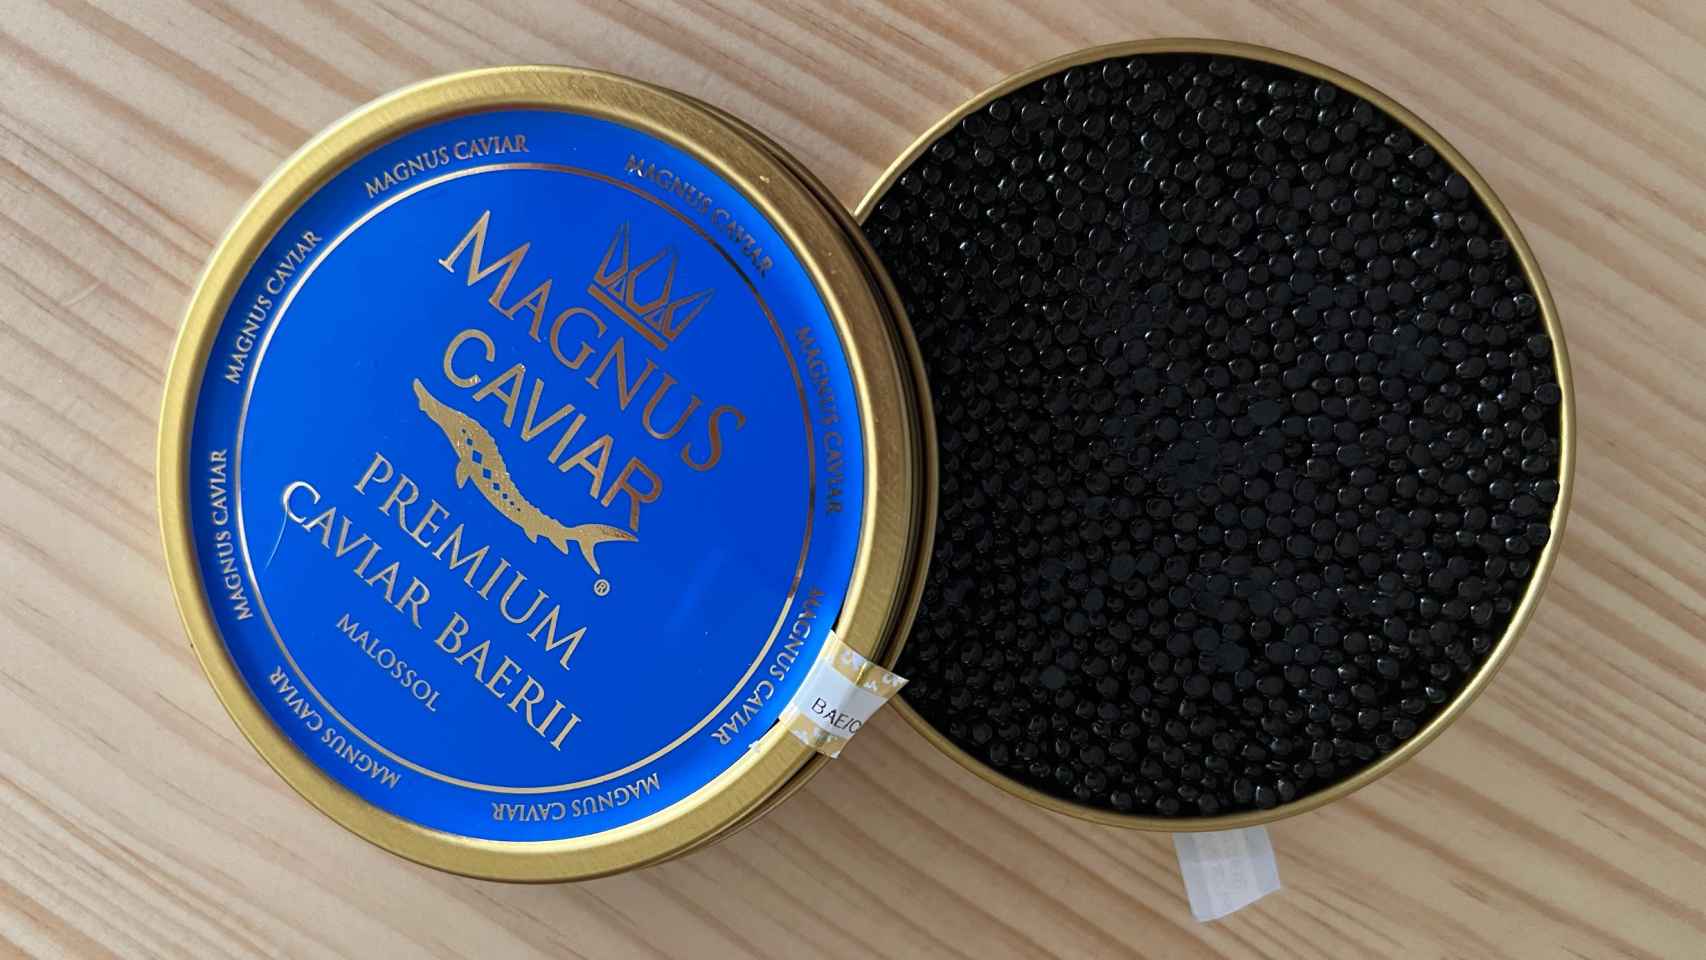 Caviar Baeris de Magnus Caviar